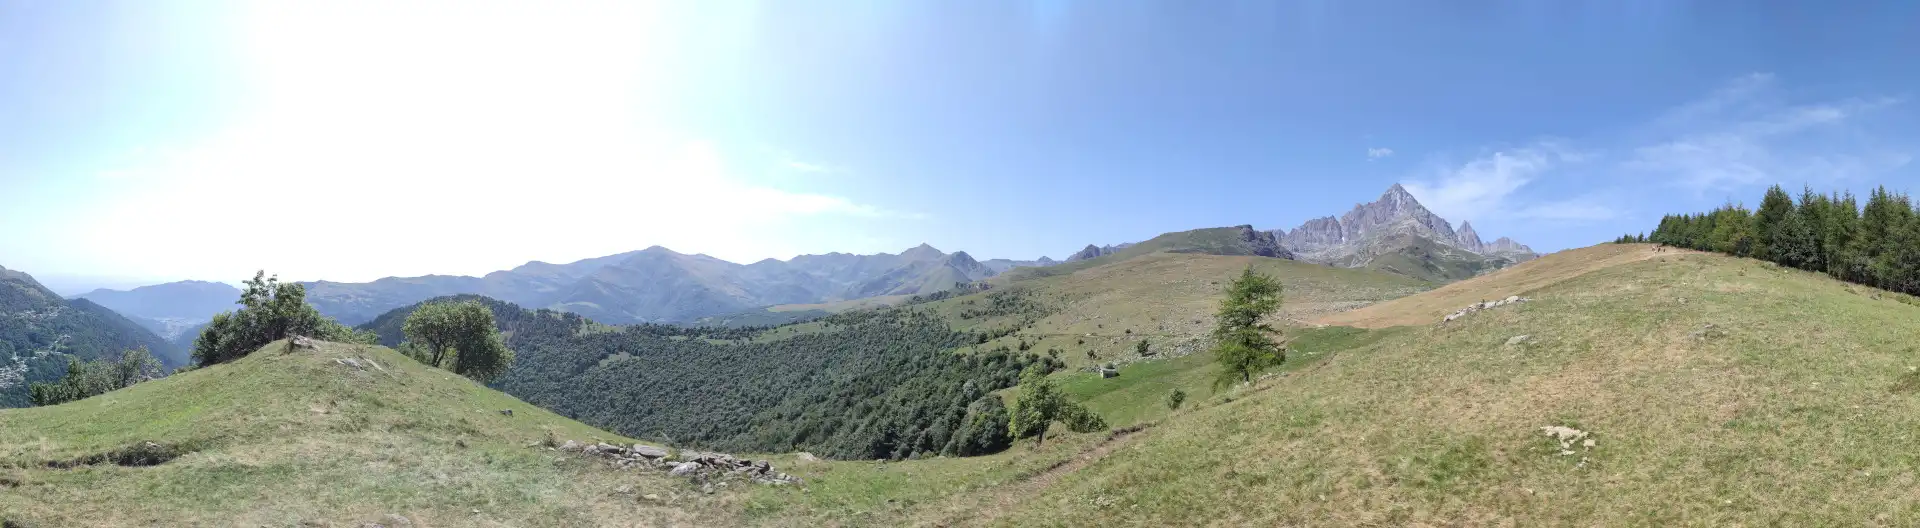 Quattro passi in montagna - Salita al Monte Tivoli da Crissolo, valle Po